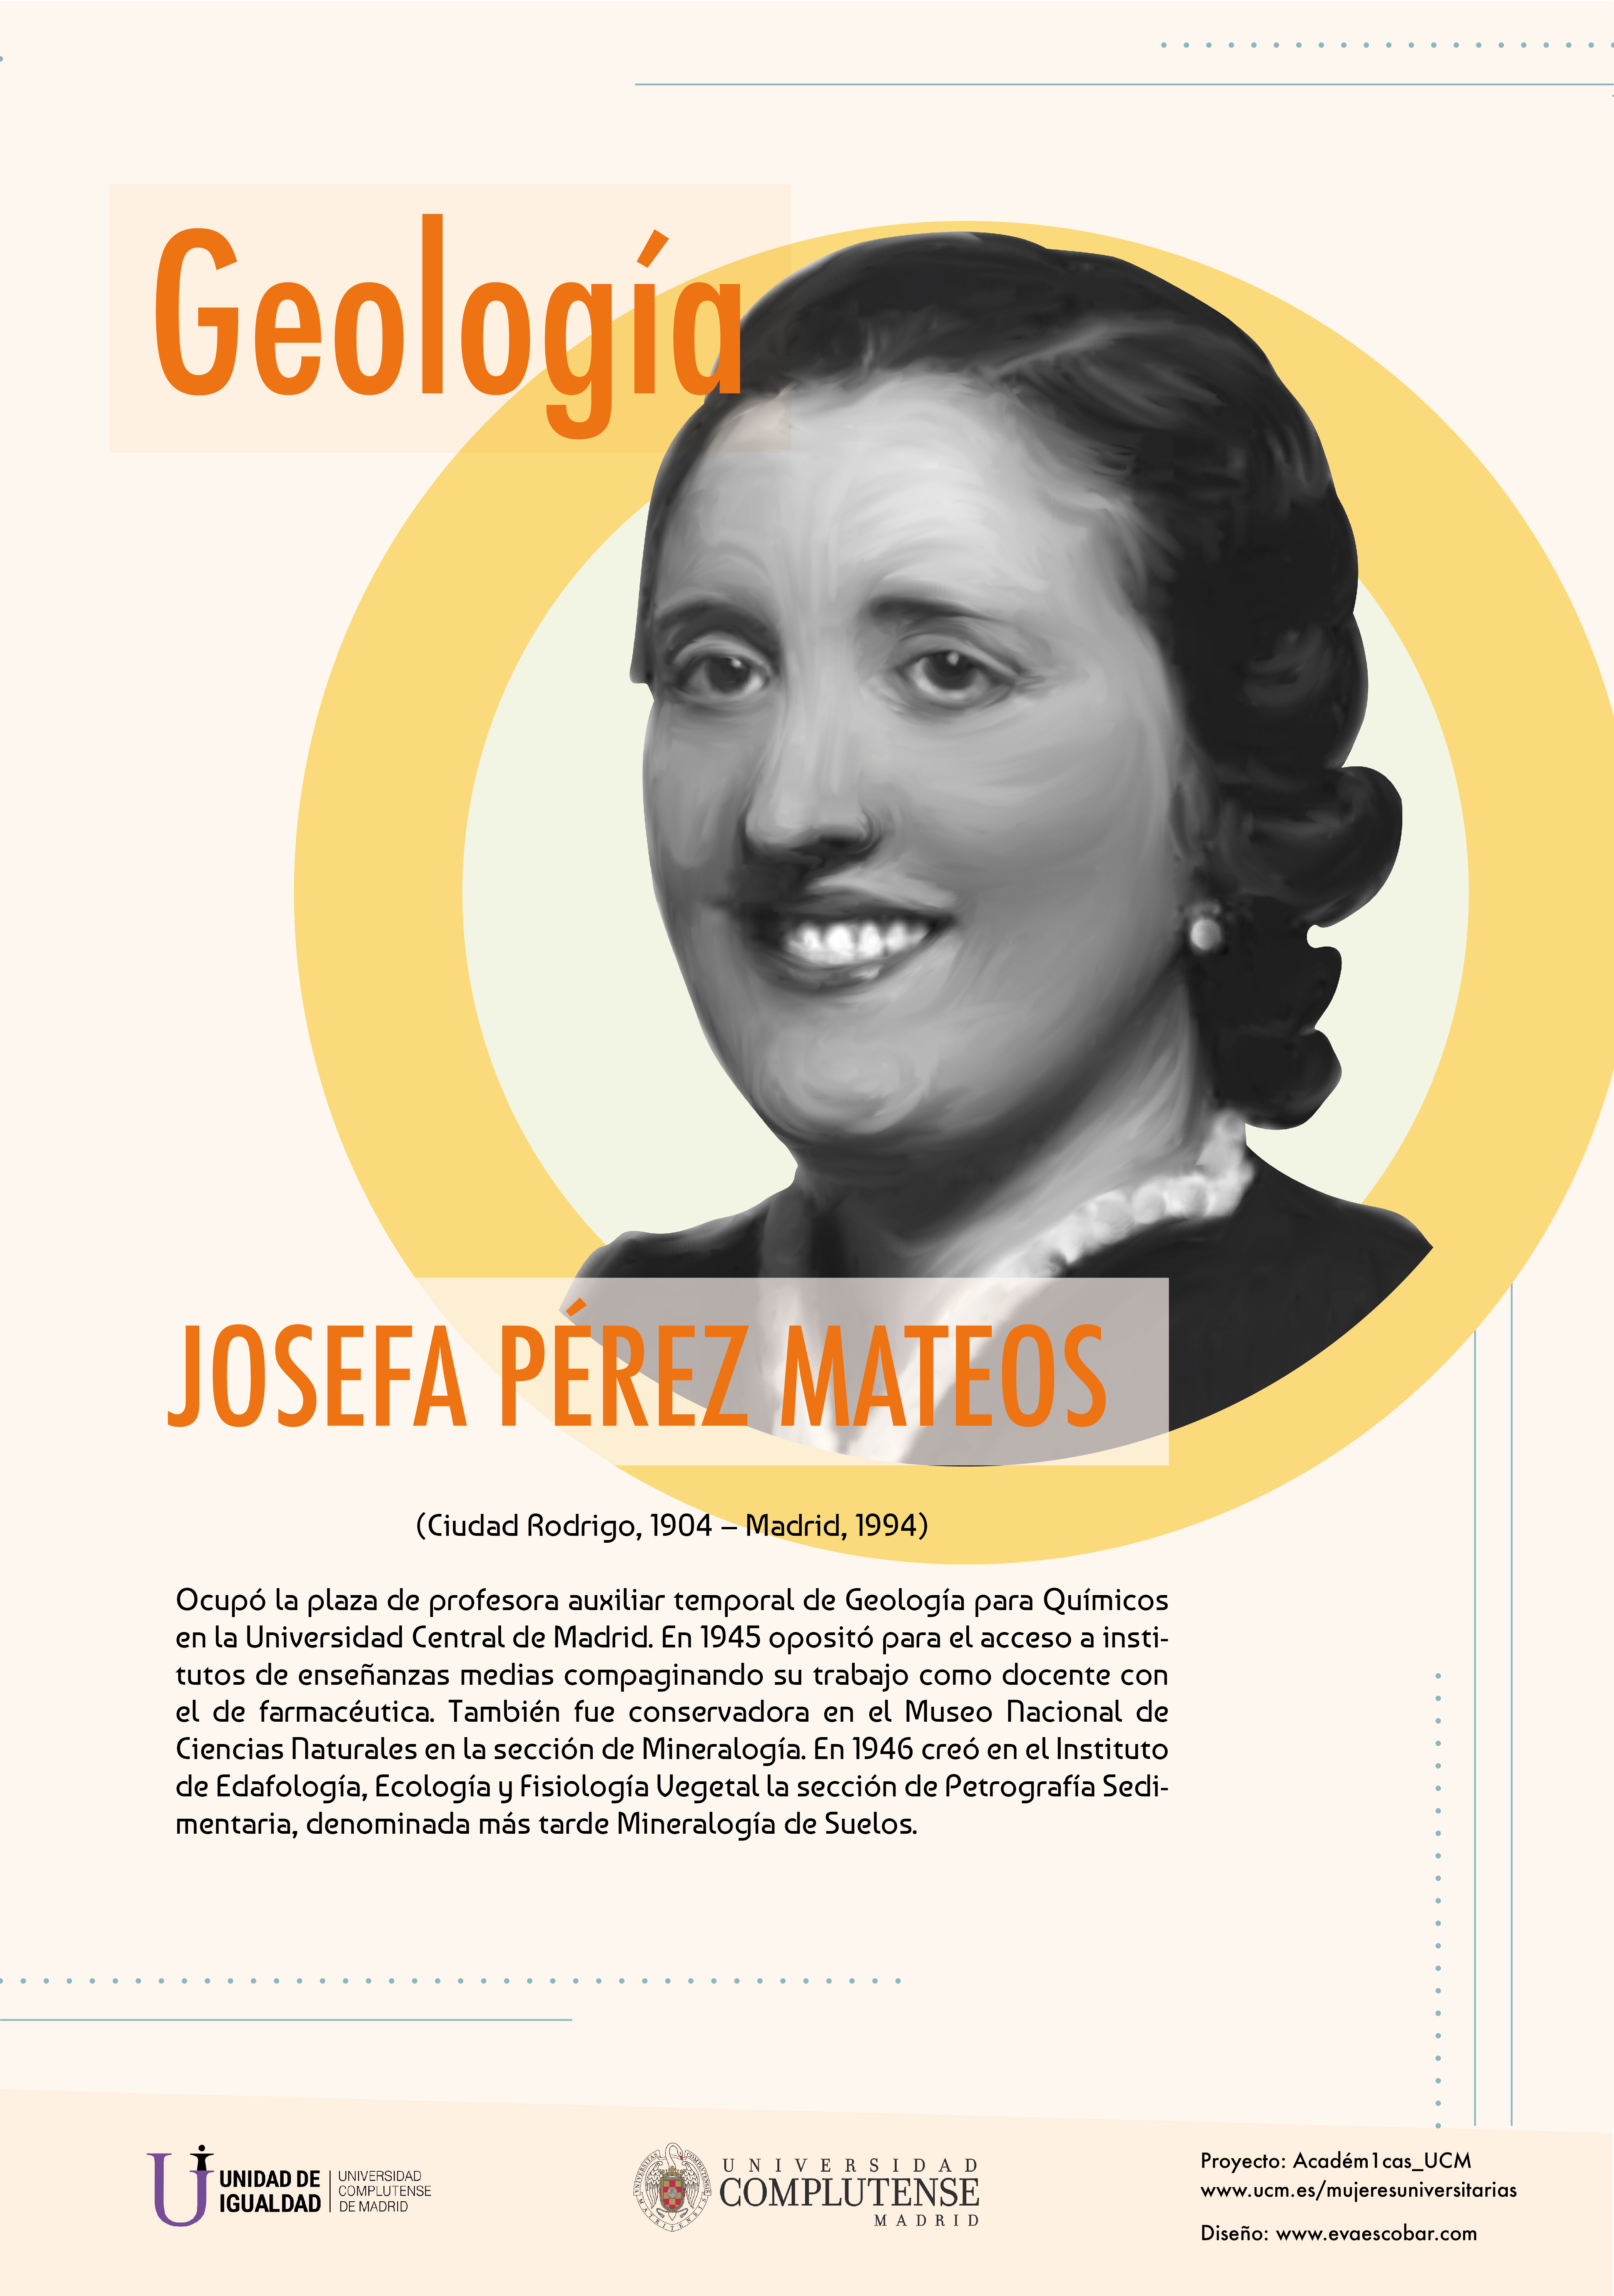 Cartel informativo sobre Josefa Pérez Mateos